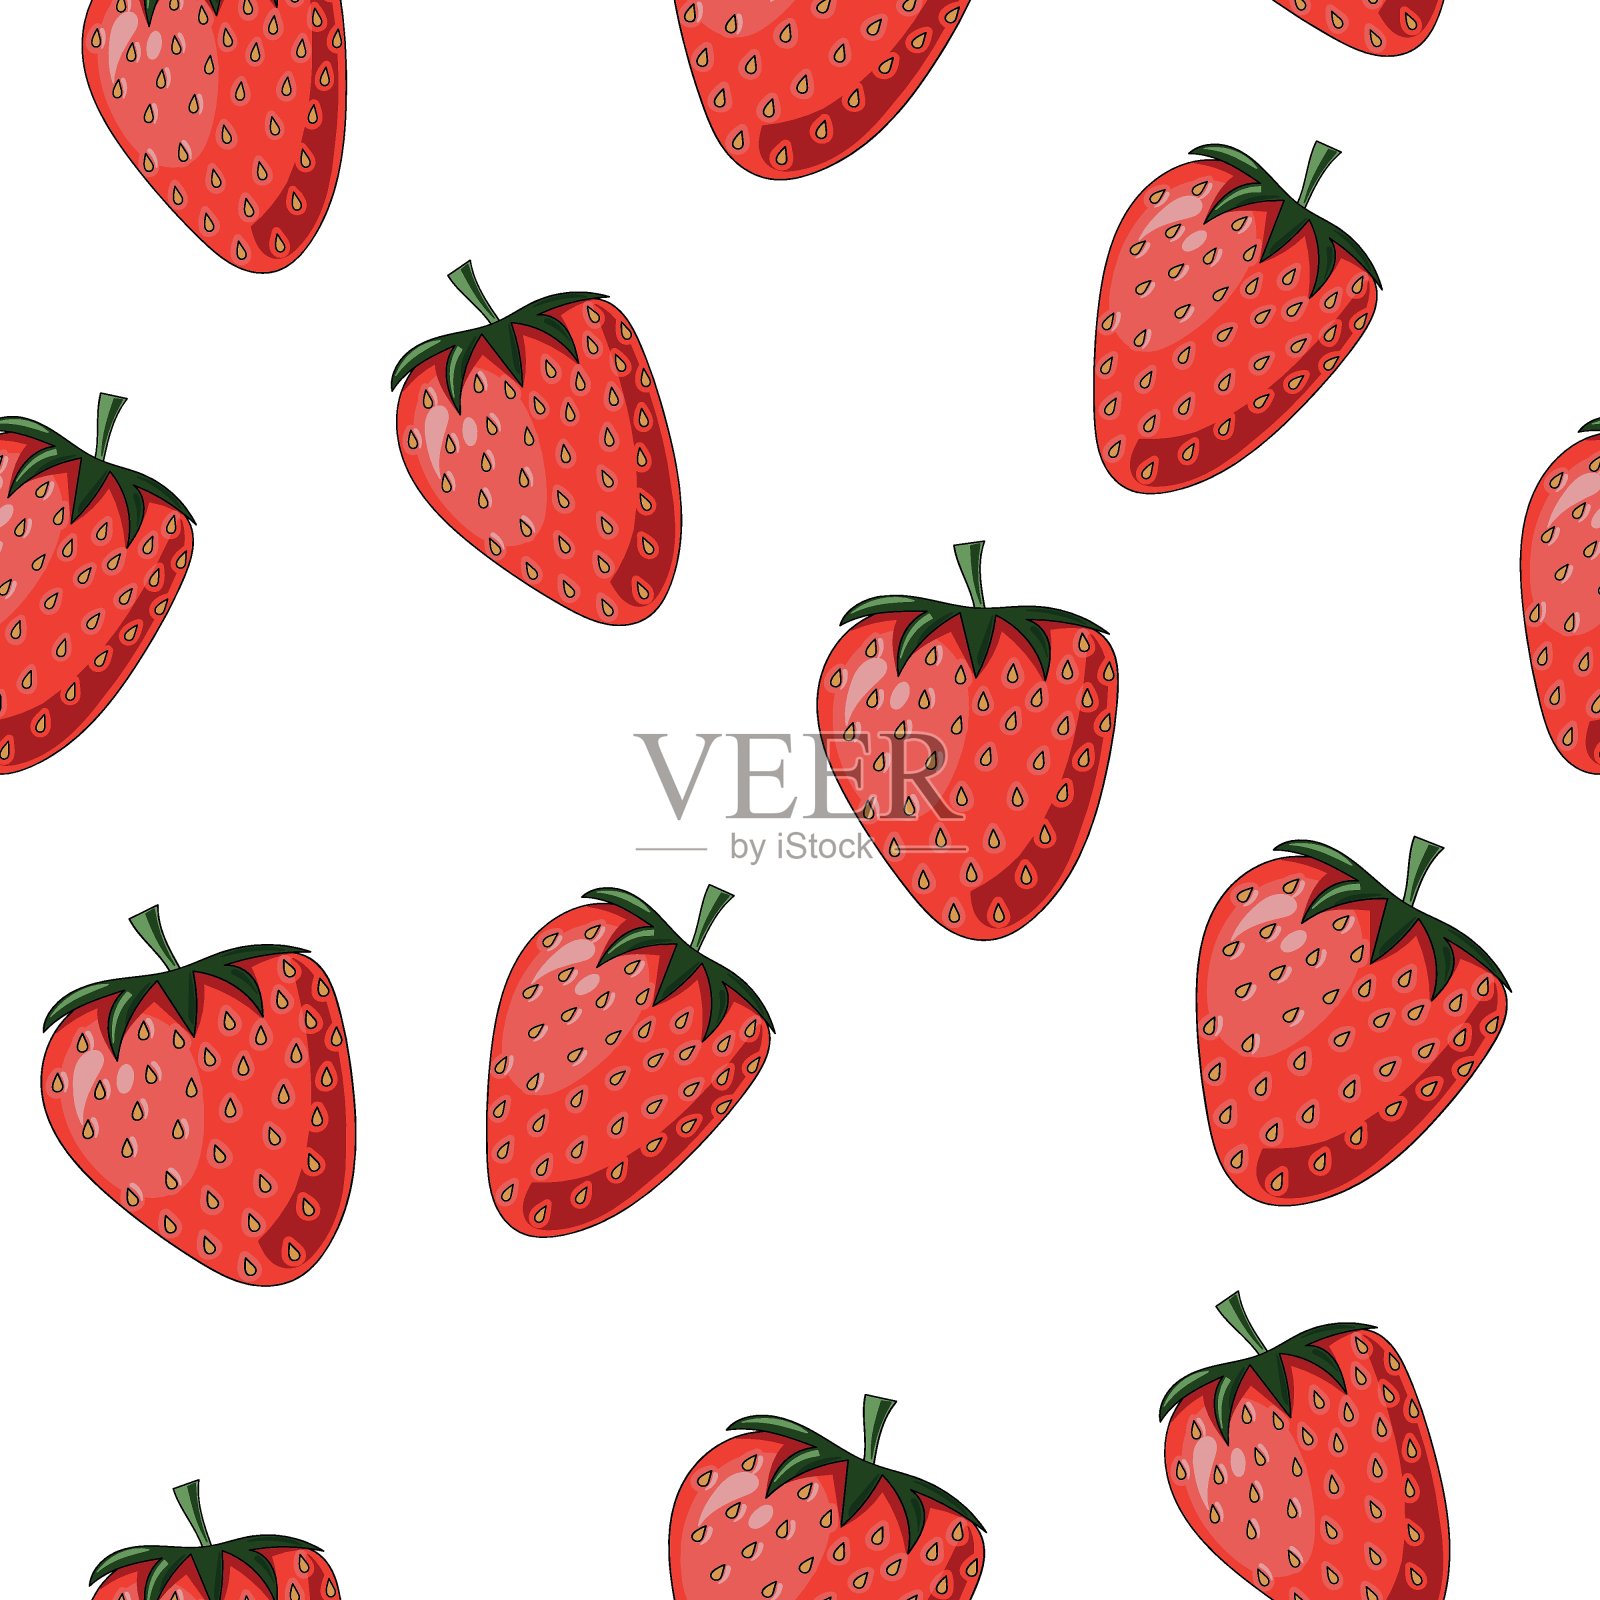 白色背景下草莓的特写镜头插画图片素材